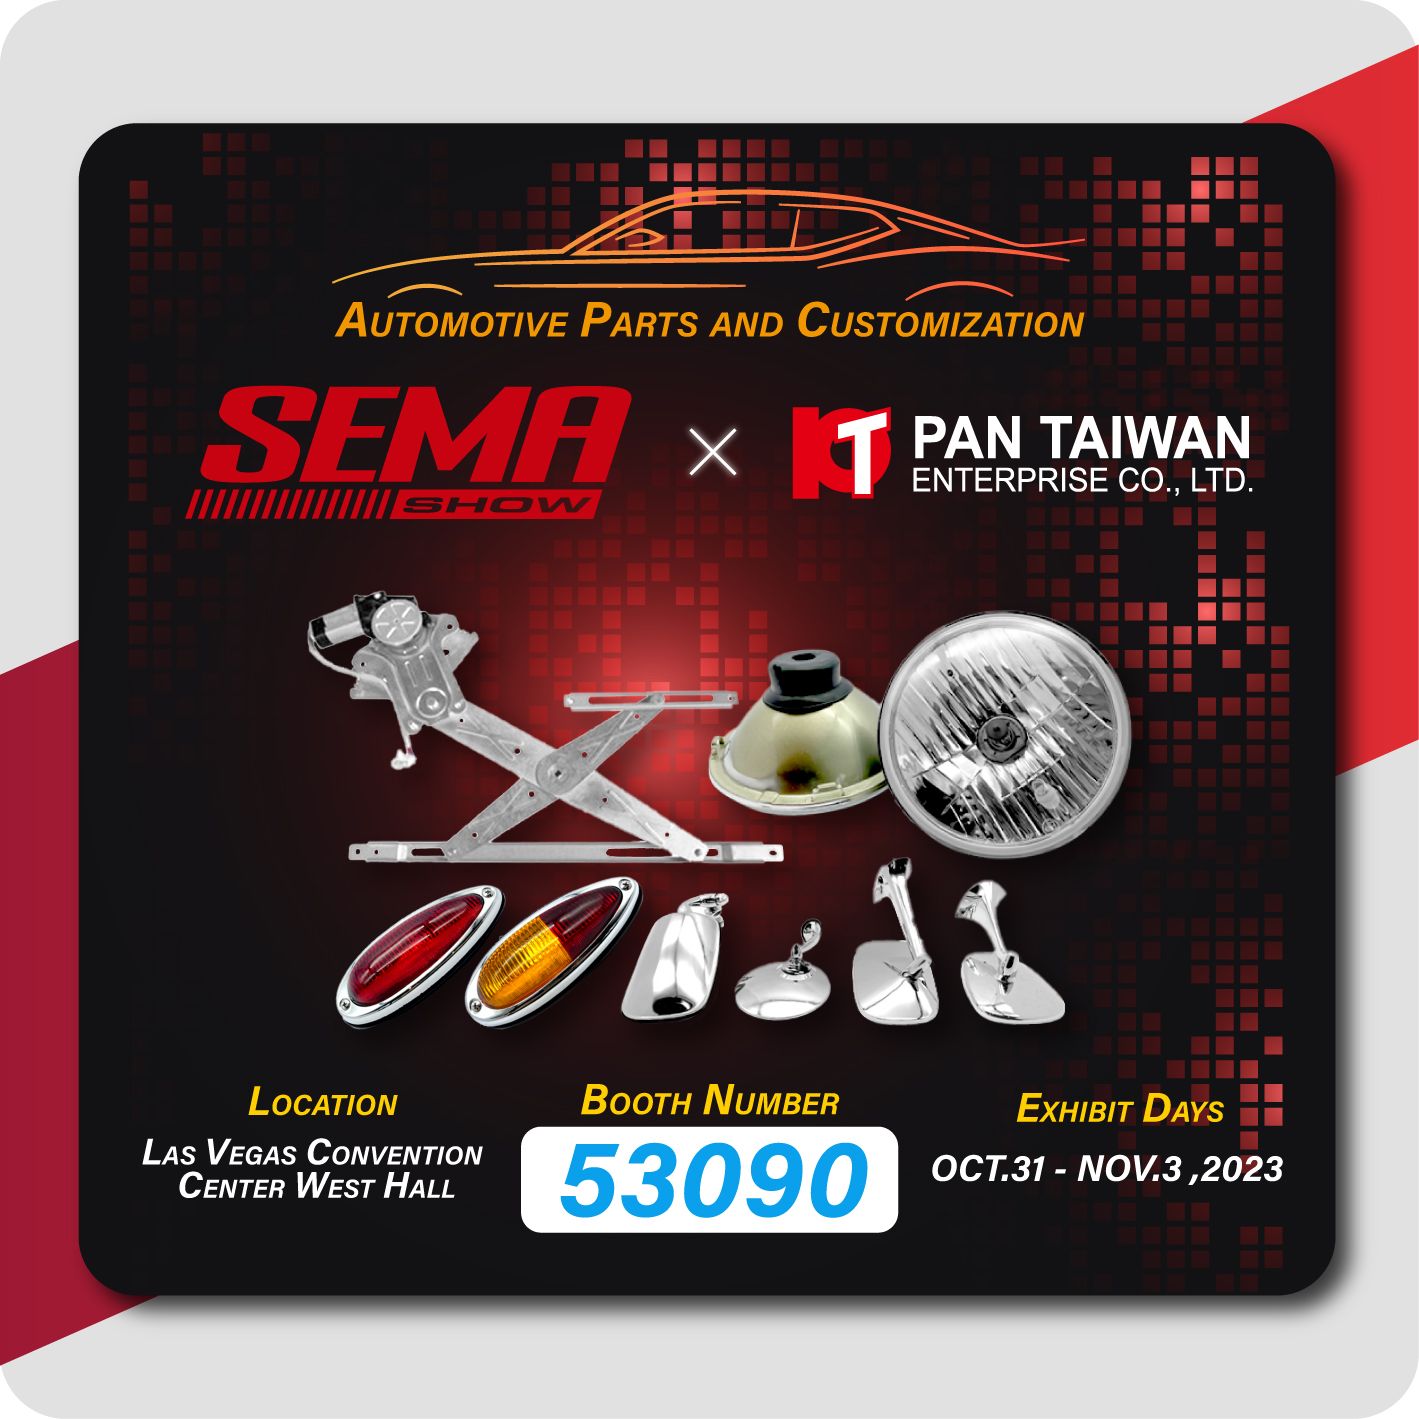 Pan Taiwan принимает участие в SEMA 2023 и демонстрирует наш регулятор окон, запчасти для классических автомобилей и индивидуальный сервис для автомобилей с гибридным двигателем и электромобилей всем нашим клиентам.